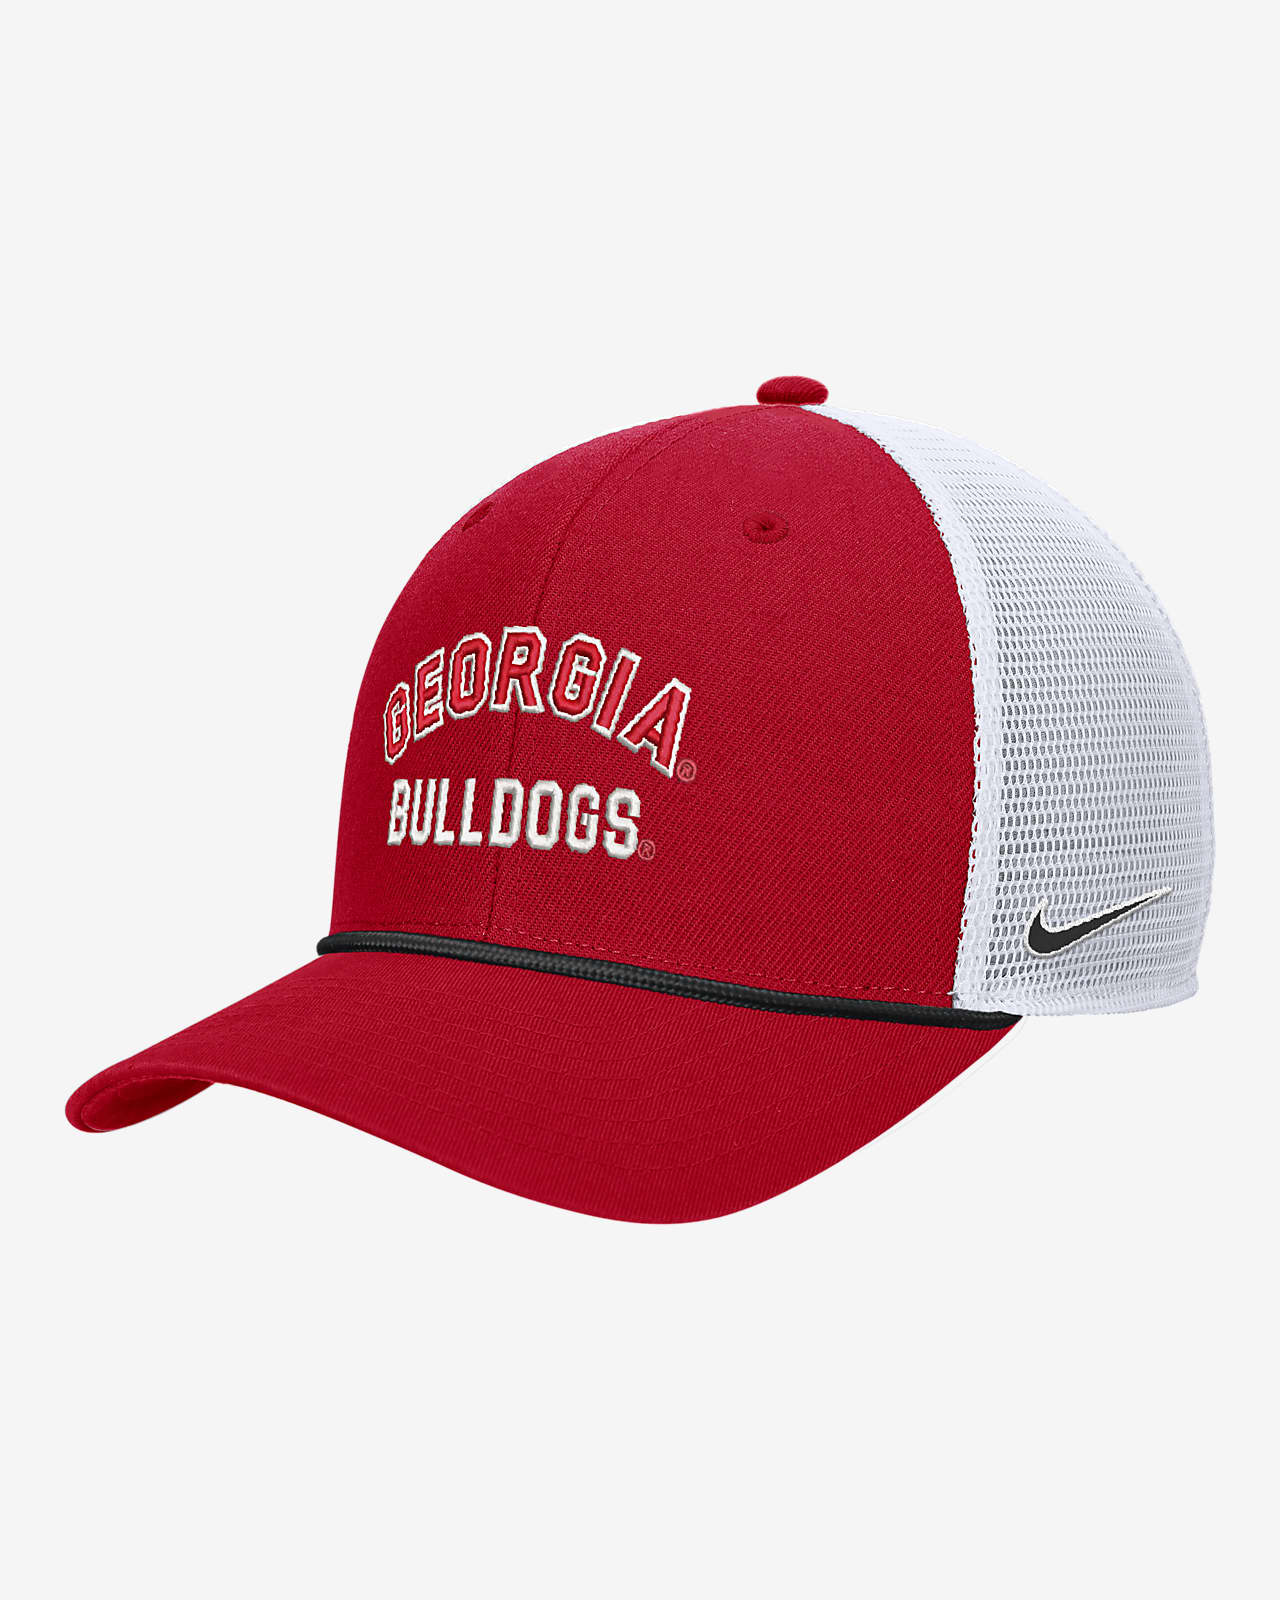 Georgia Nike College Snapback Trucker Hat